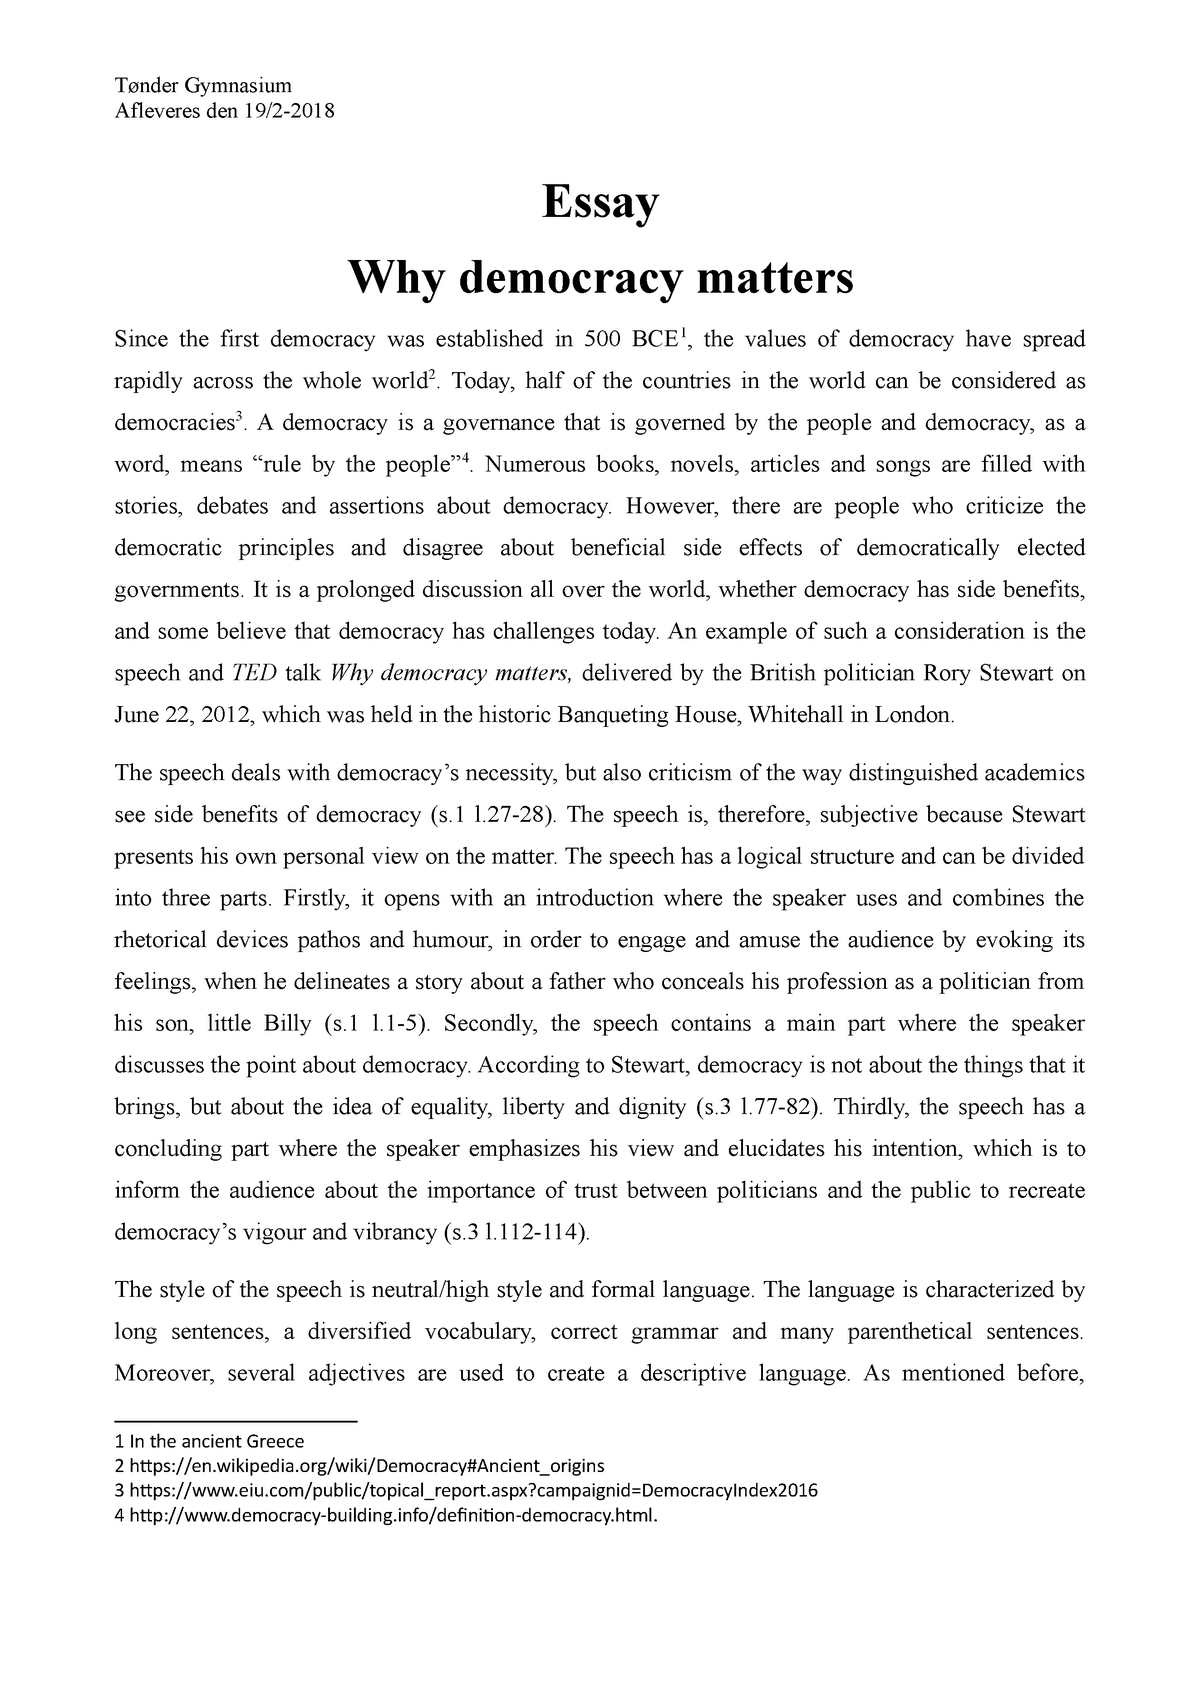 legal essay on democracy